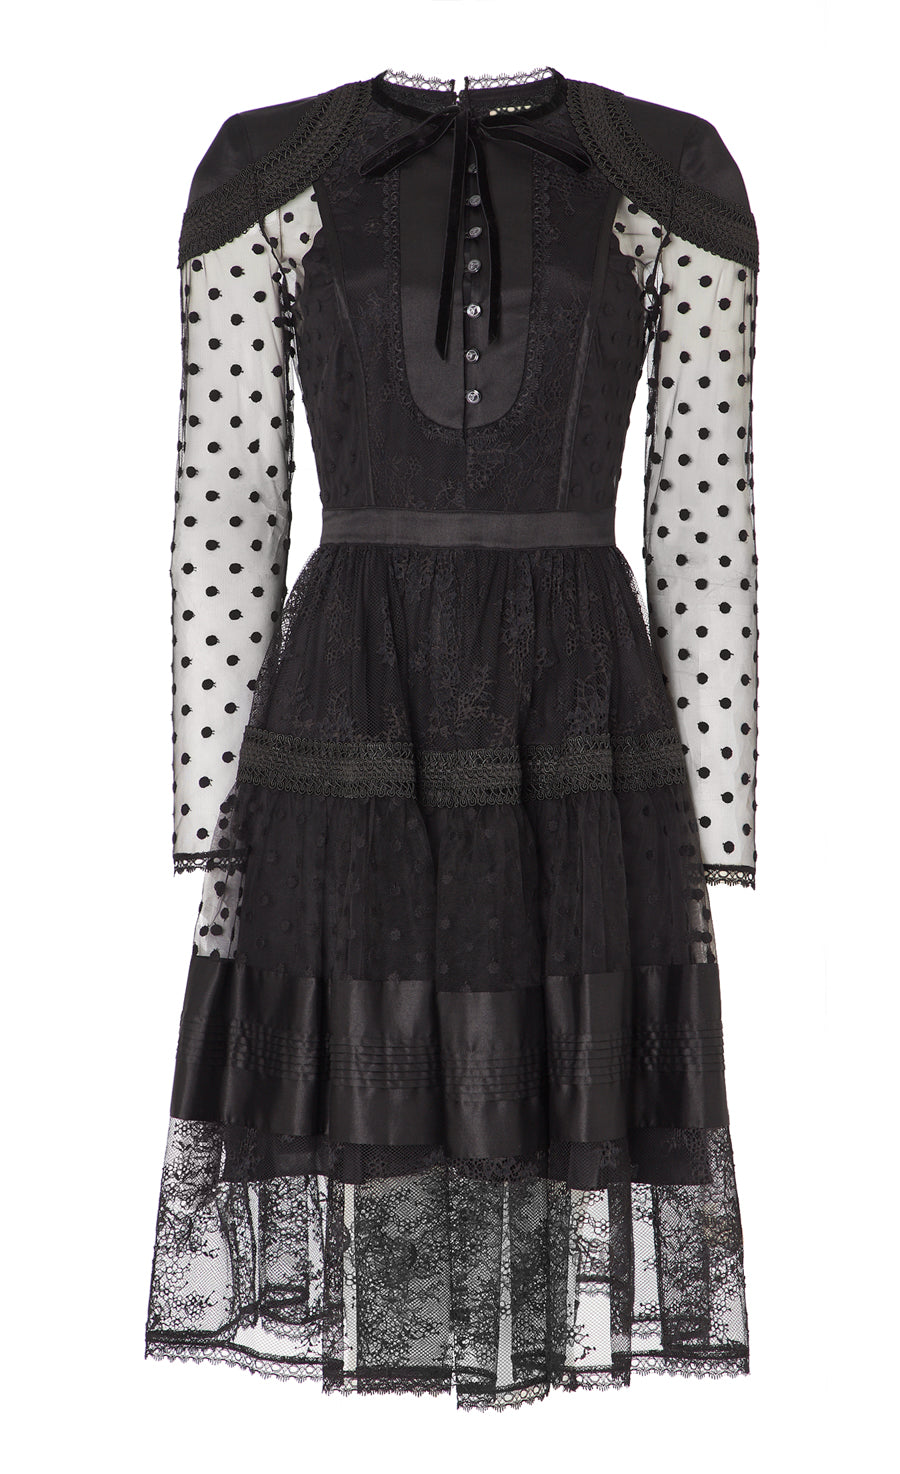 Marlow Sleeved Dress - Black